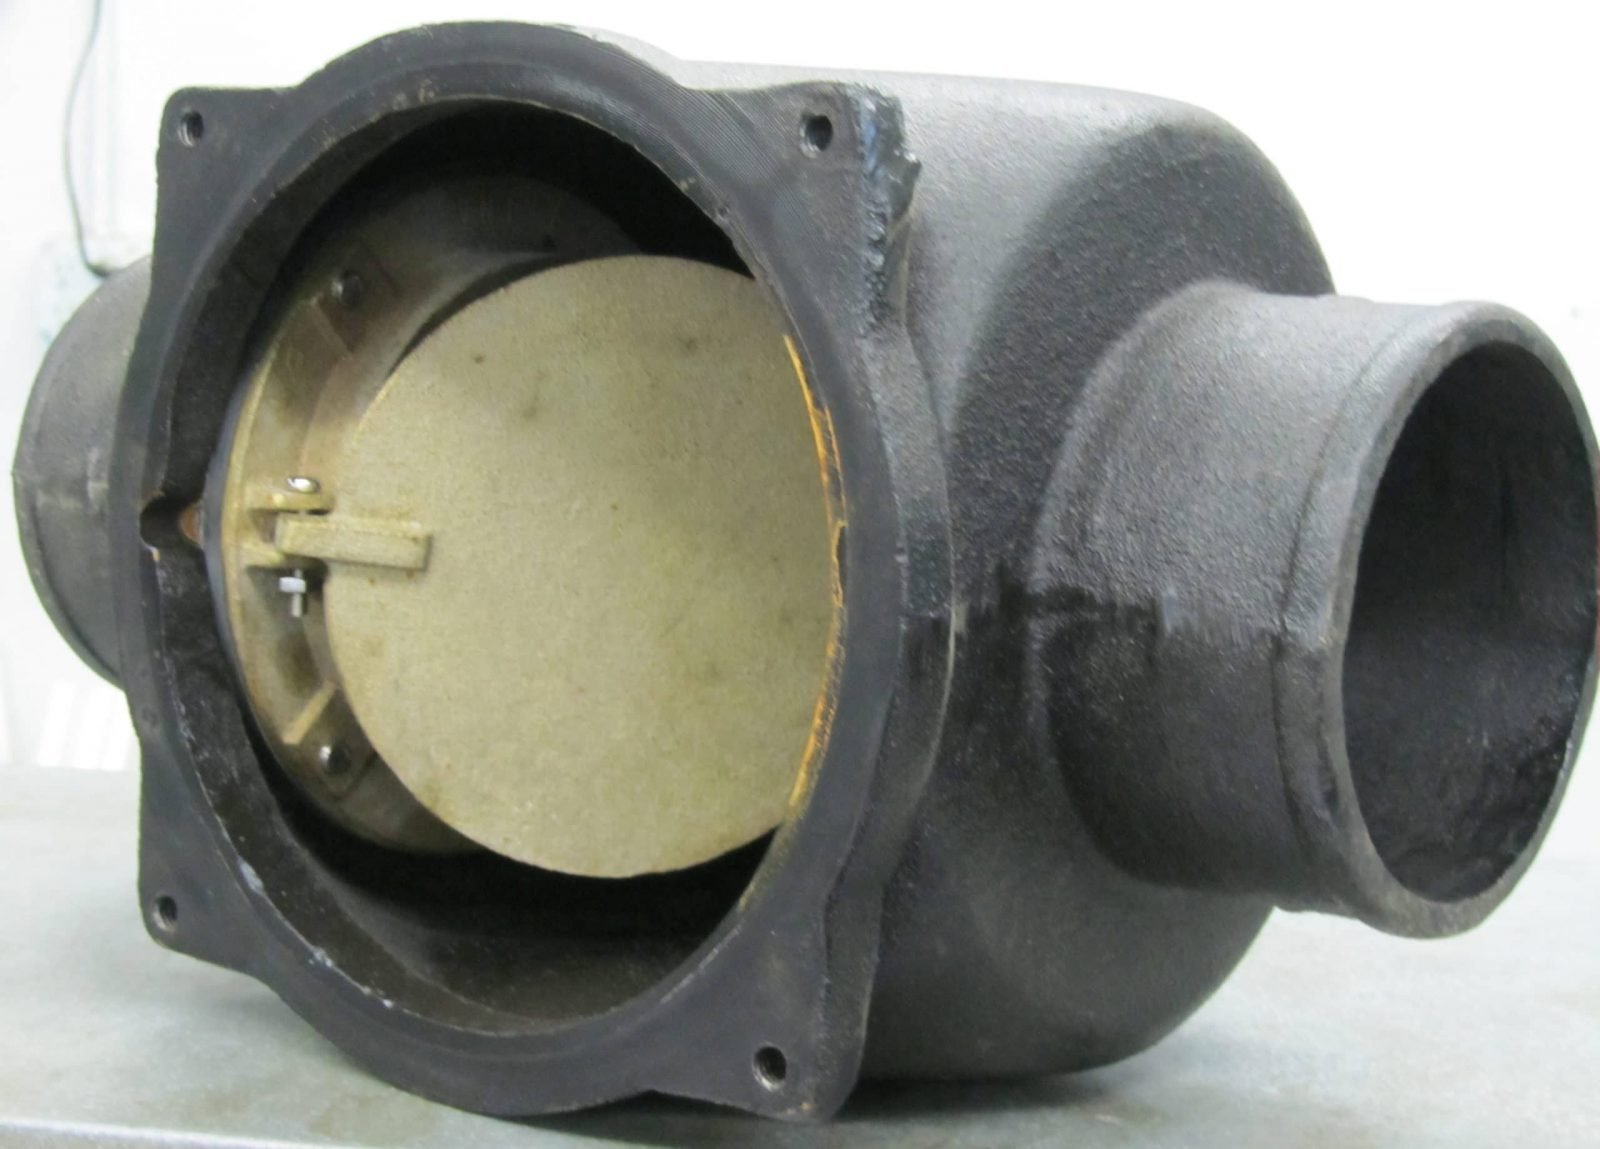 inside-sewer-valve